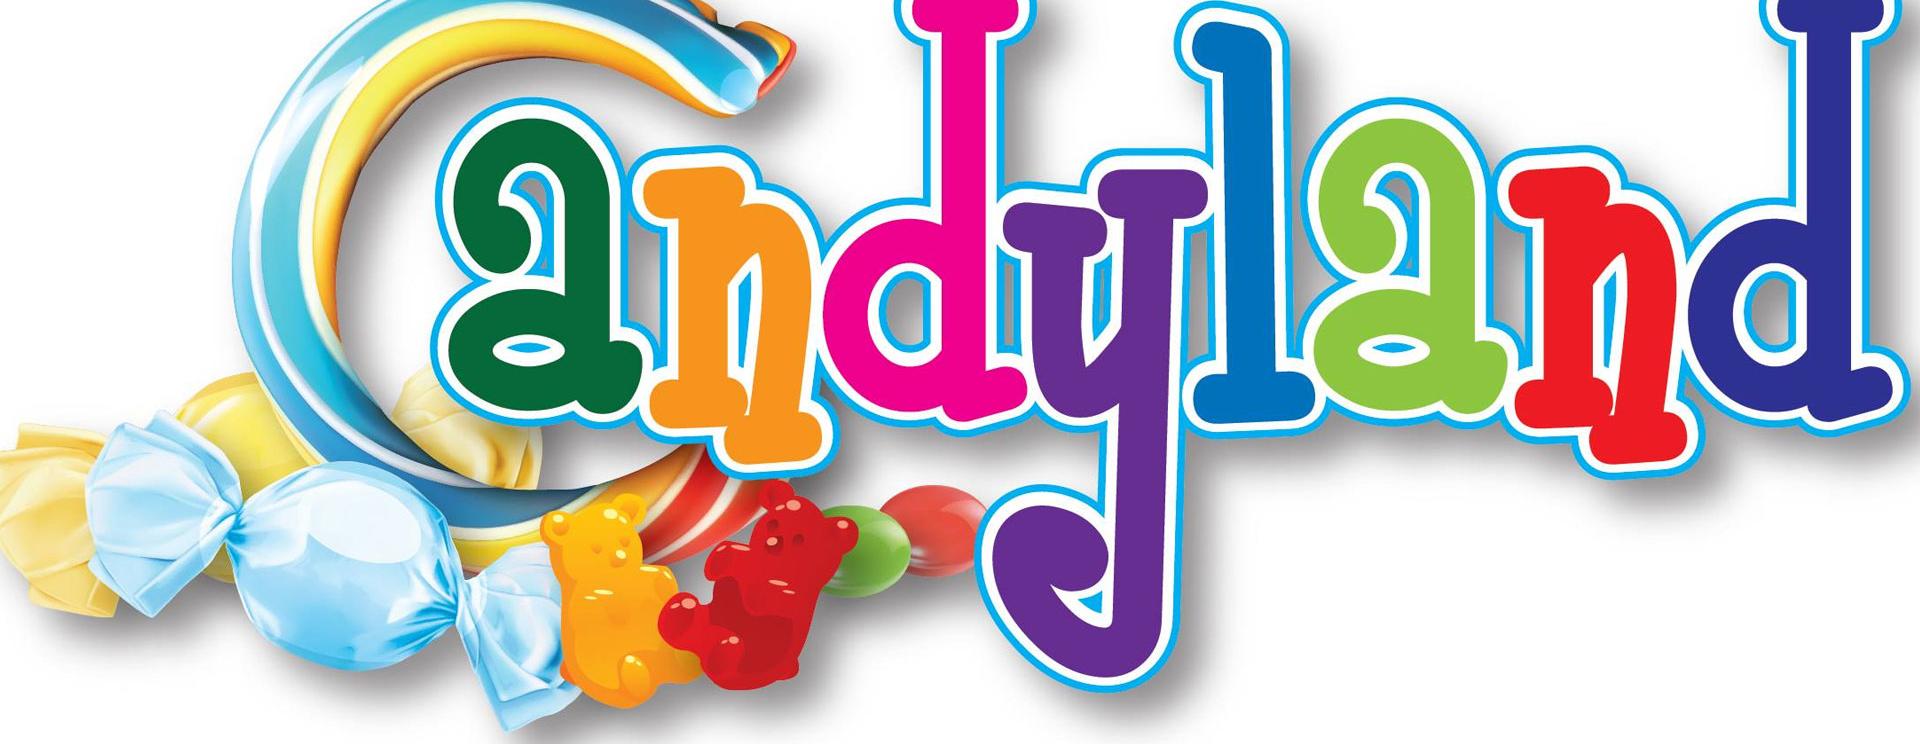 Candyland clipart logo, Candyland logo Transparent FREE for download on